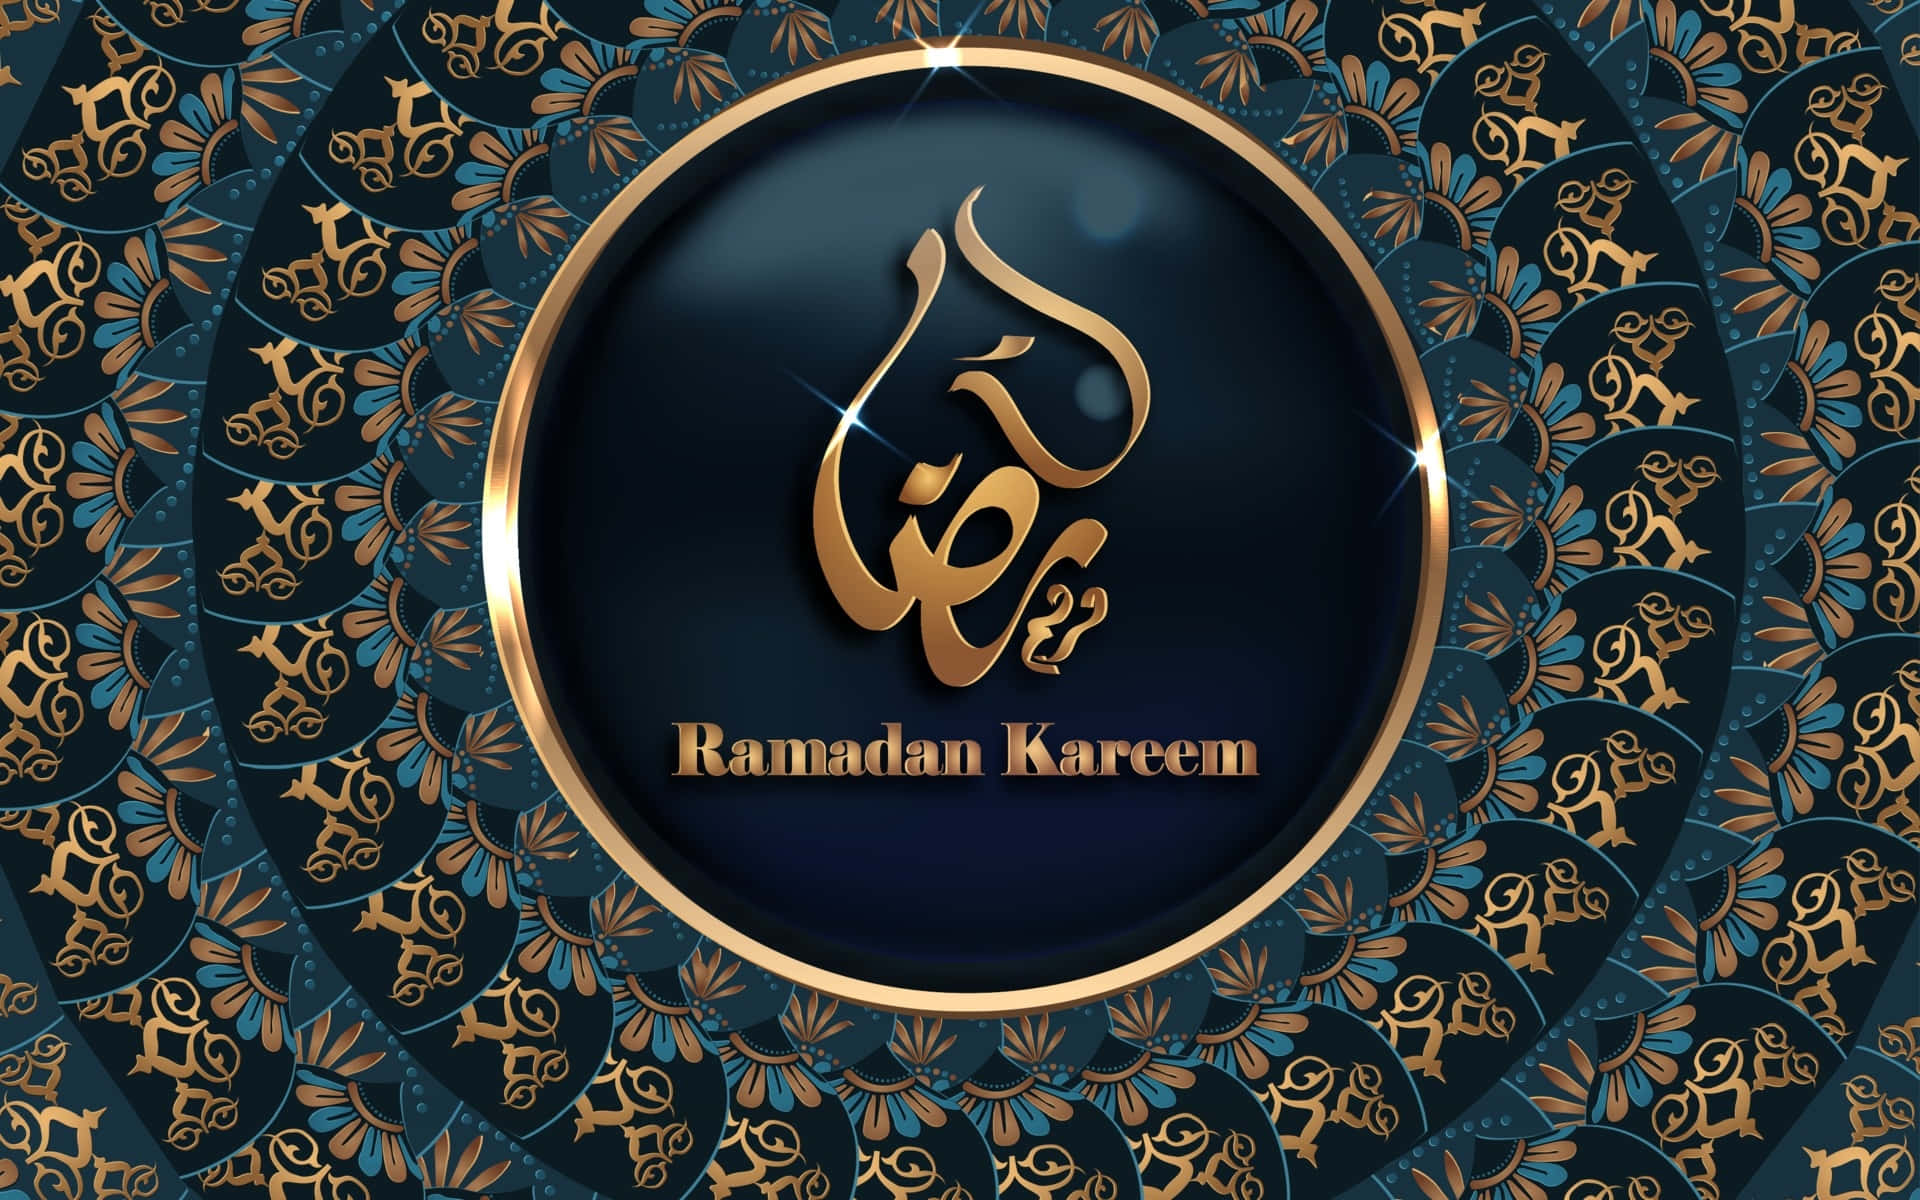 "Embracing the Holy Spirit of Ramadan"